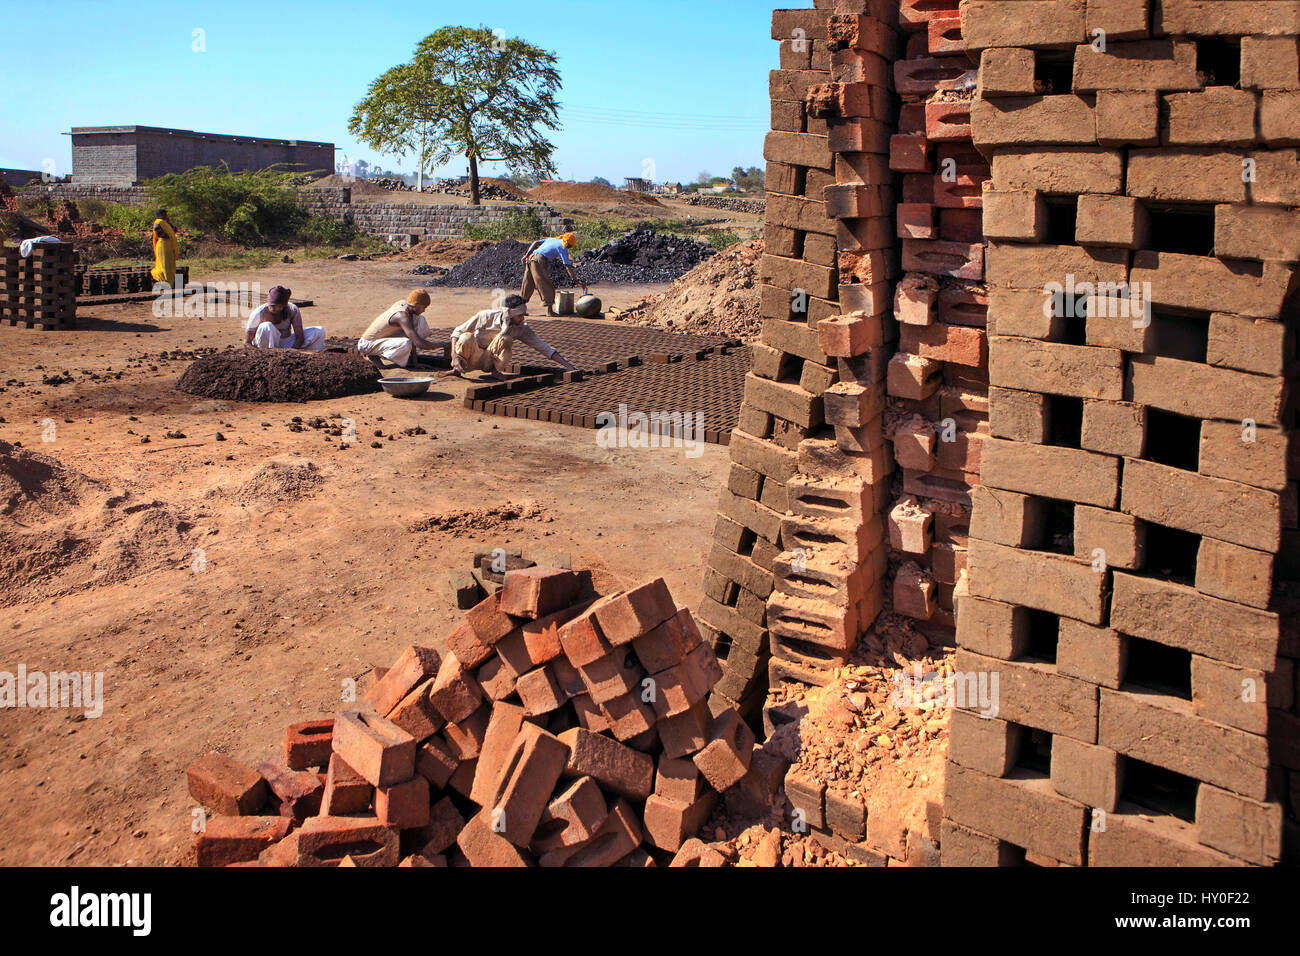 Man making bricks, barwani, madhya pradesh, india, asia Stock Photo